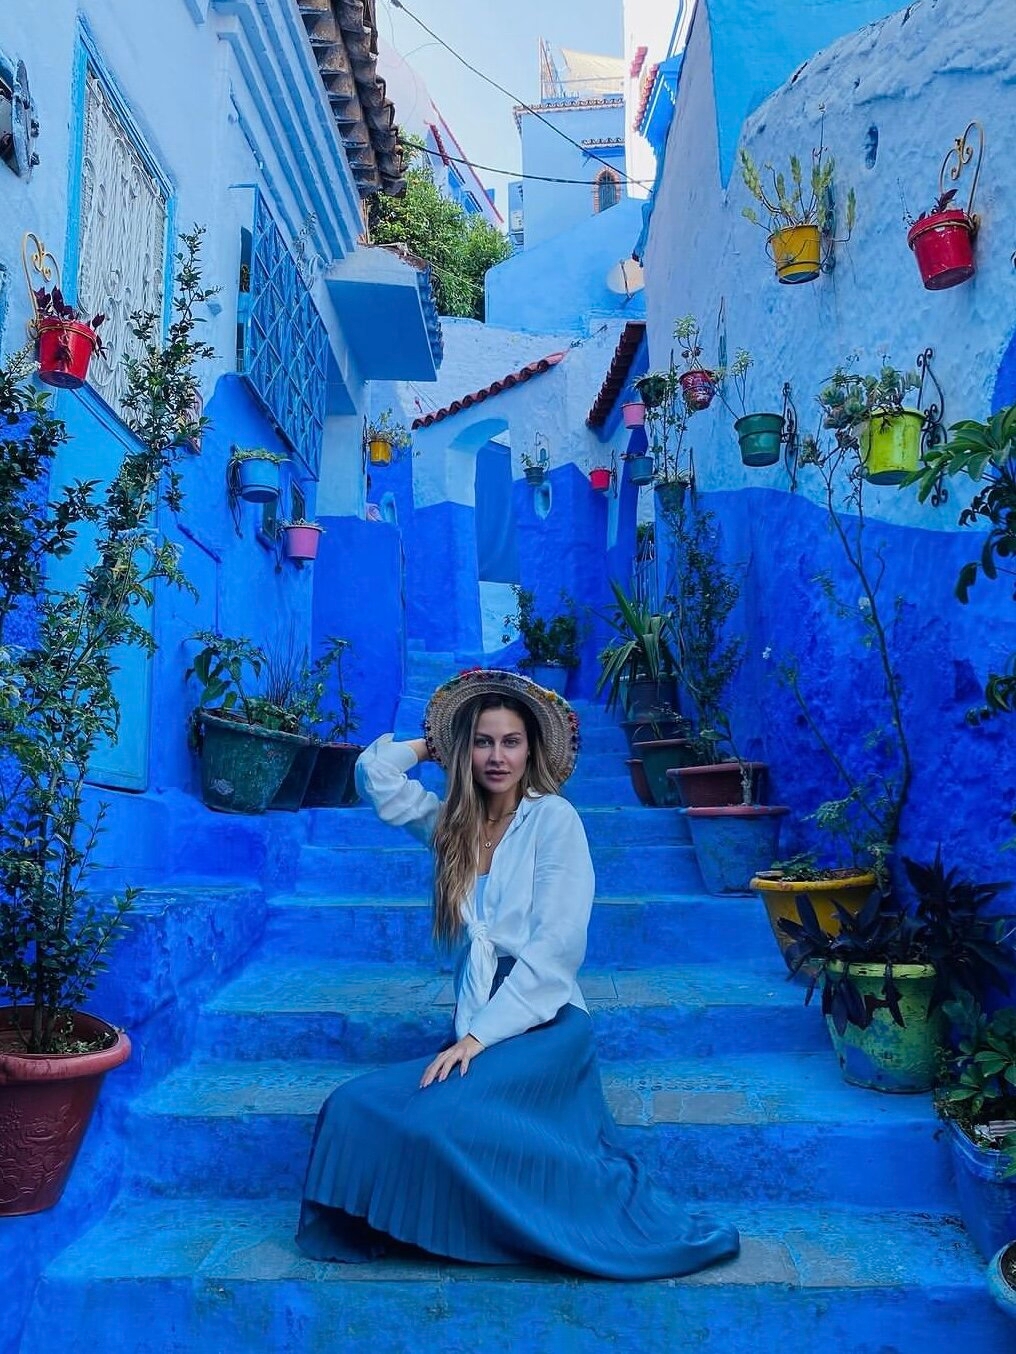 🔵 舍夫沙万｜摩洛哥的童话世界 🔵||这座彷如童话般的蓝色小镇就是摩洛哥的舍夫沙万，是被《孤独星球》